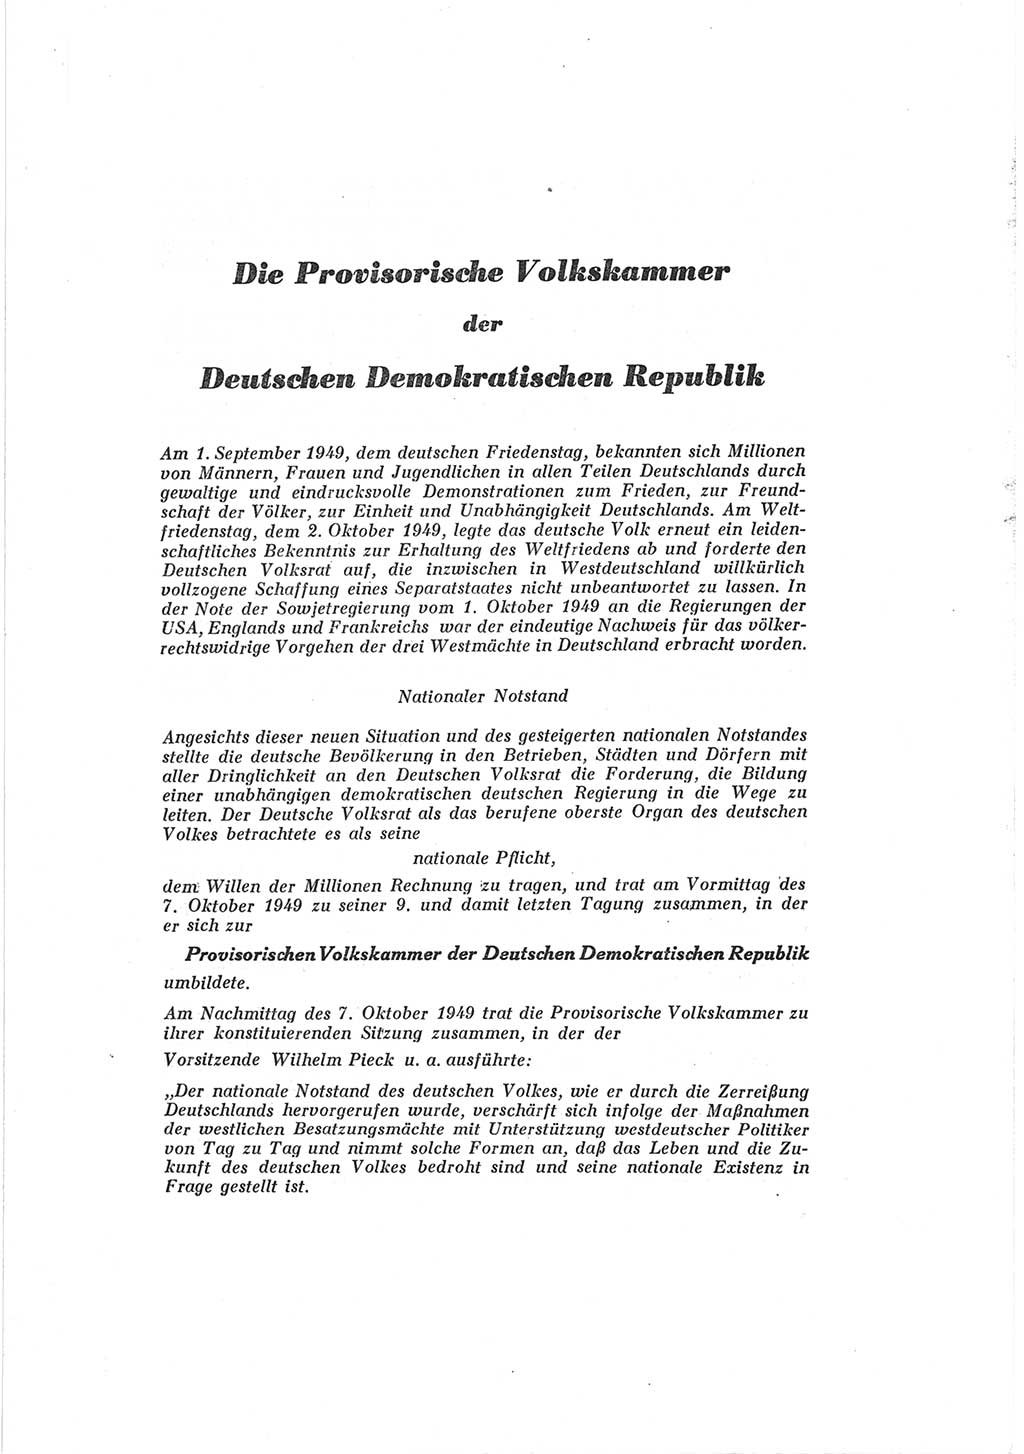 Provisorische Volkskammer (VK) der Deutschen Demokratischen Republik (DDR) 1949-1950, Dokument 3 (Prov. VK DDR 1949-1950, Dok. 3)